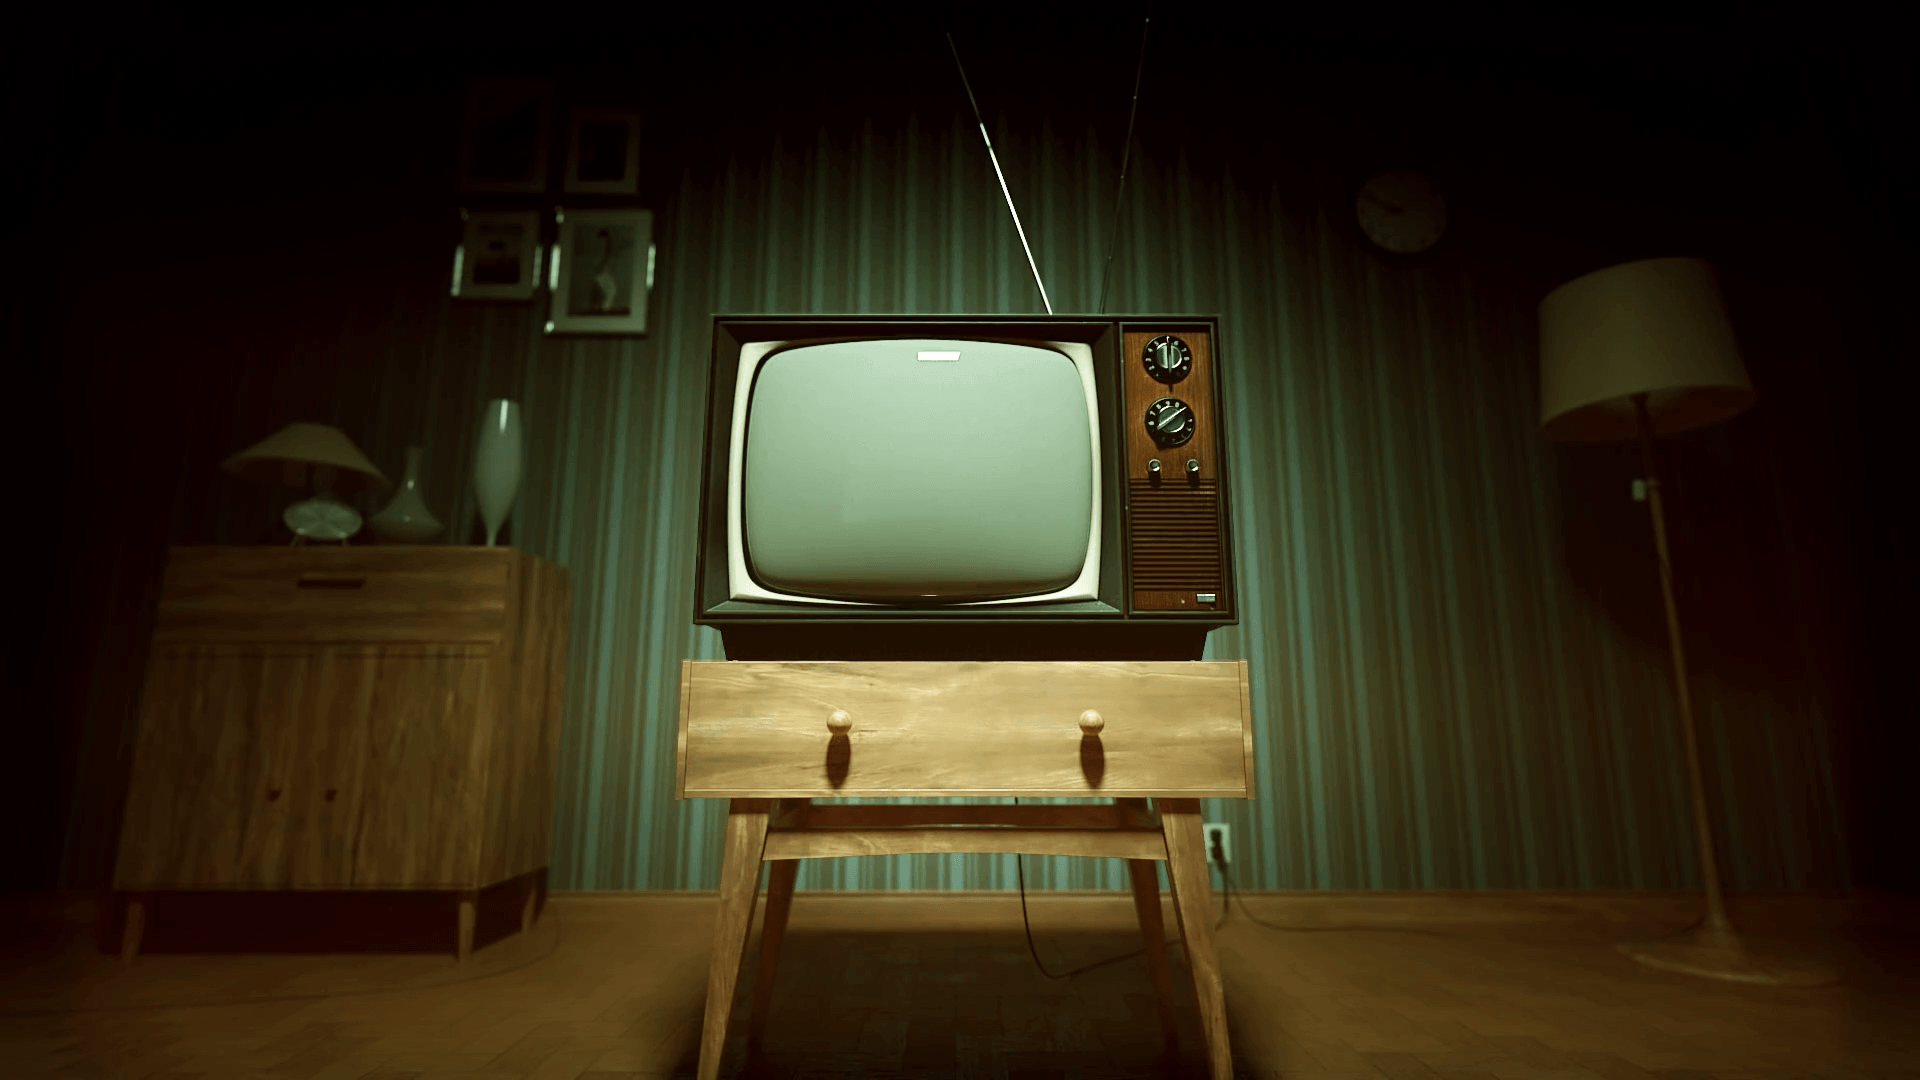 Old Tv Backgrounds - KibrisPDR